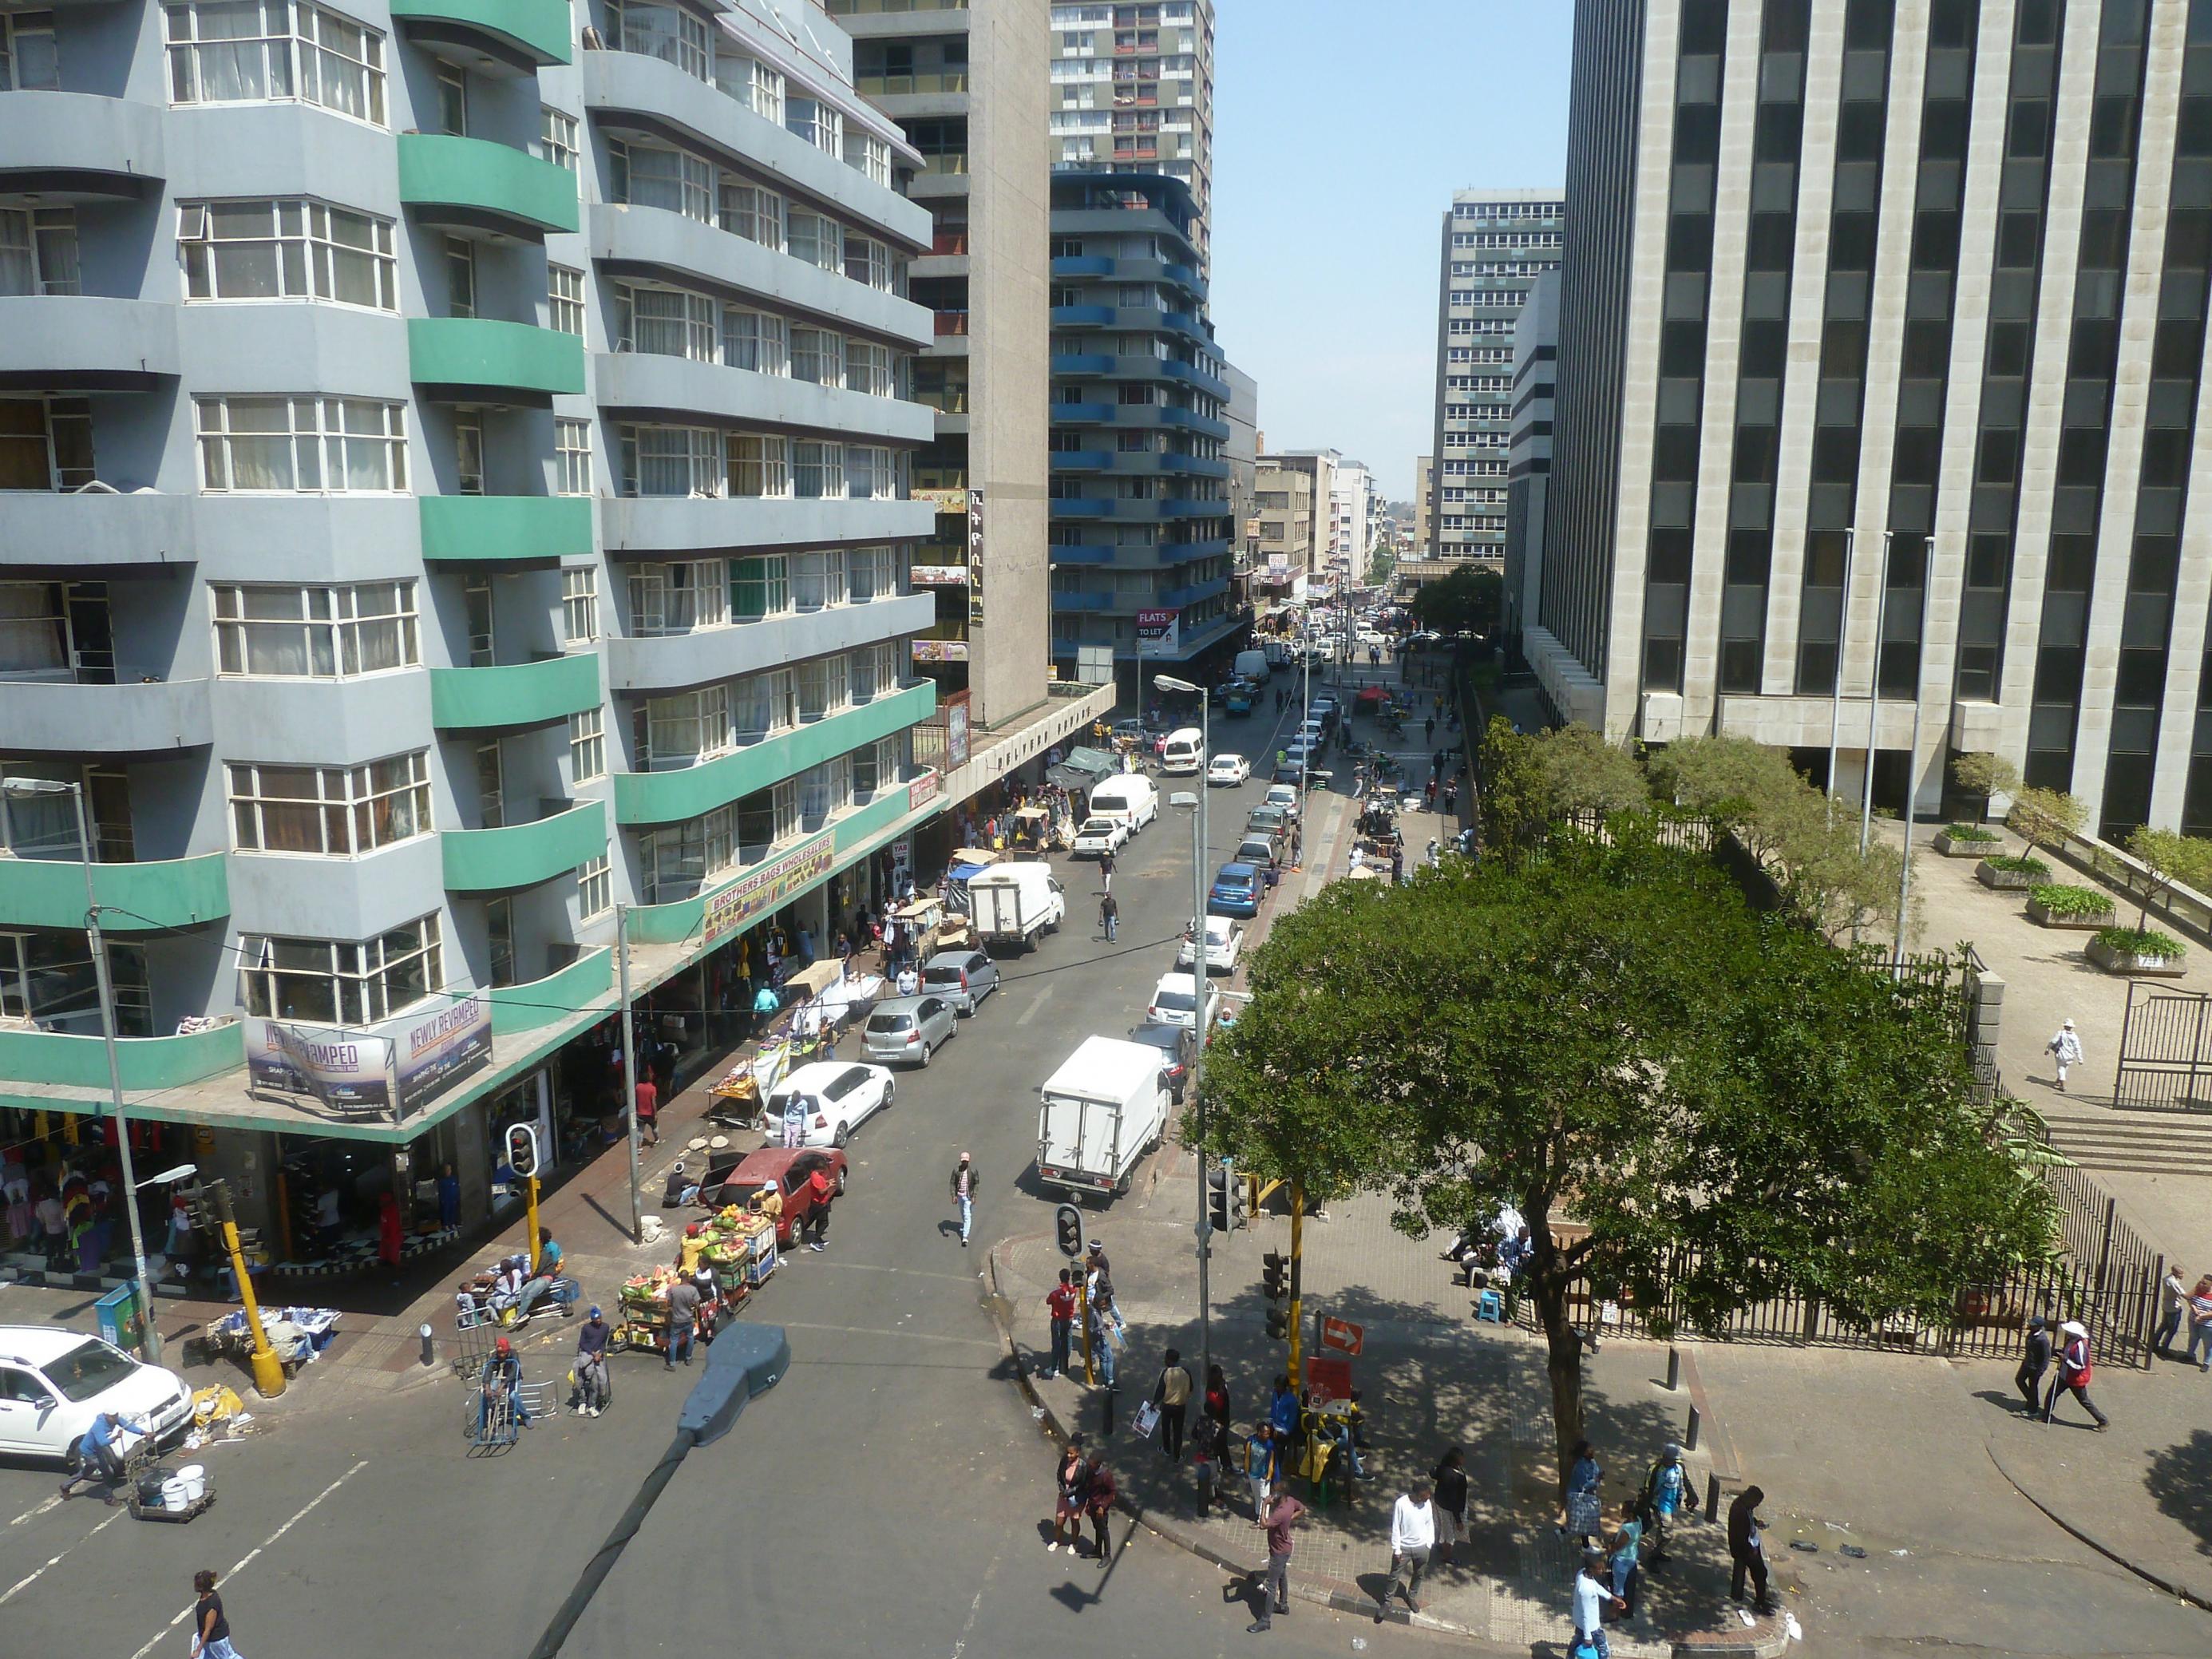 Eine Straßenschlucht im Zentrum von Johannesburg, an den Straßenrändern parken Autos, Fusßgänger sind unterwegs. Vorne rechts im Bild wachsen ein paar Bäume.